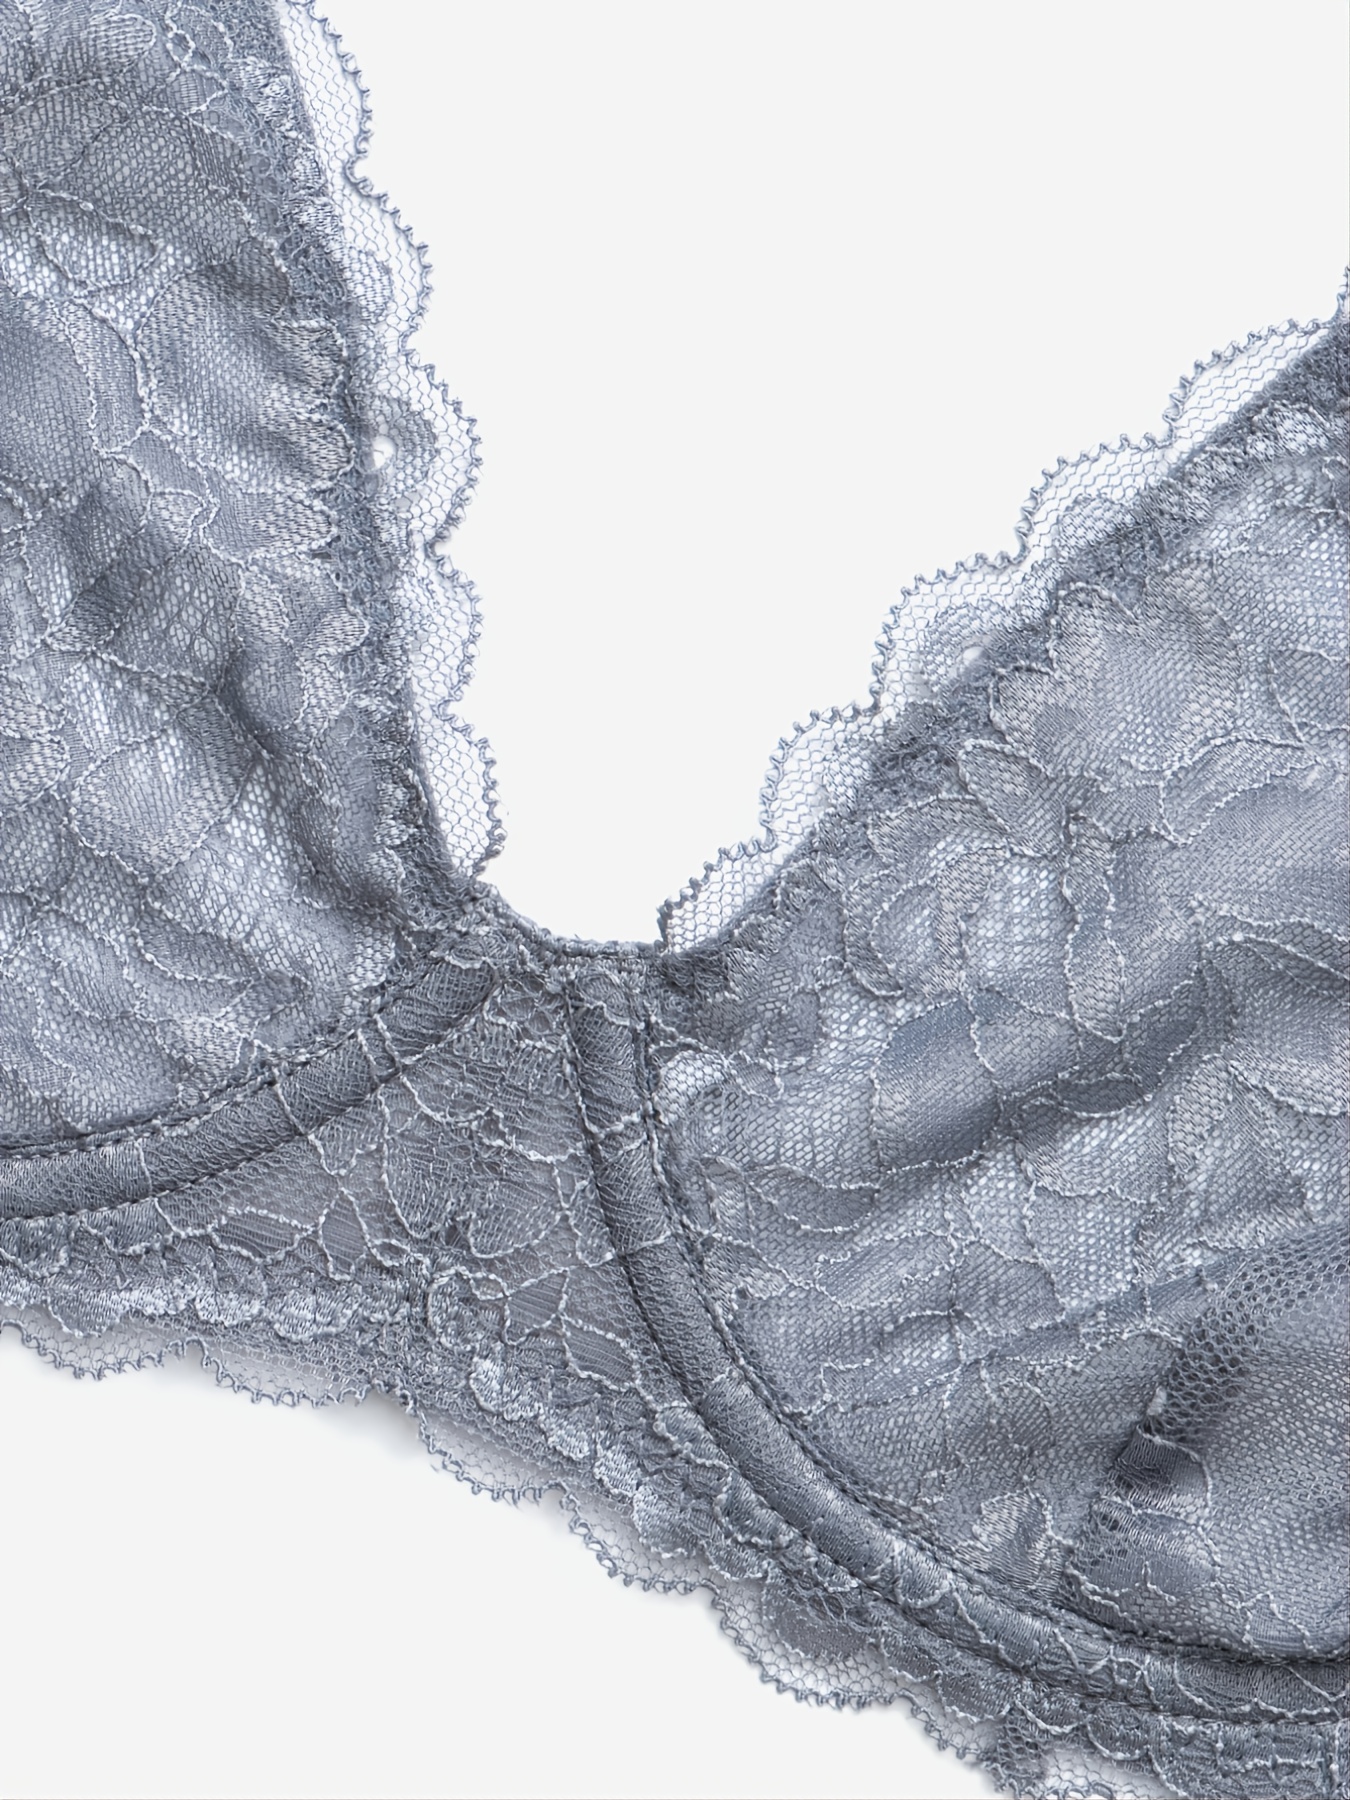 Ultra-thin Sexy Women Bras Plunge Brassiere See Through Lingerie Lace  Underwear